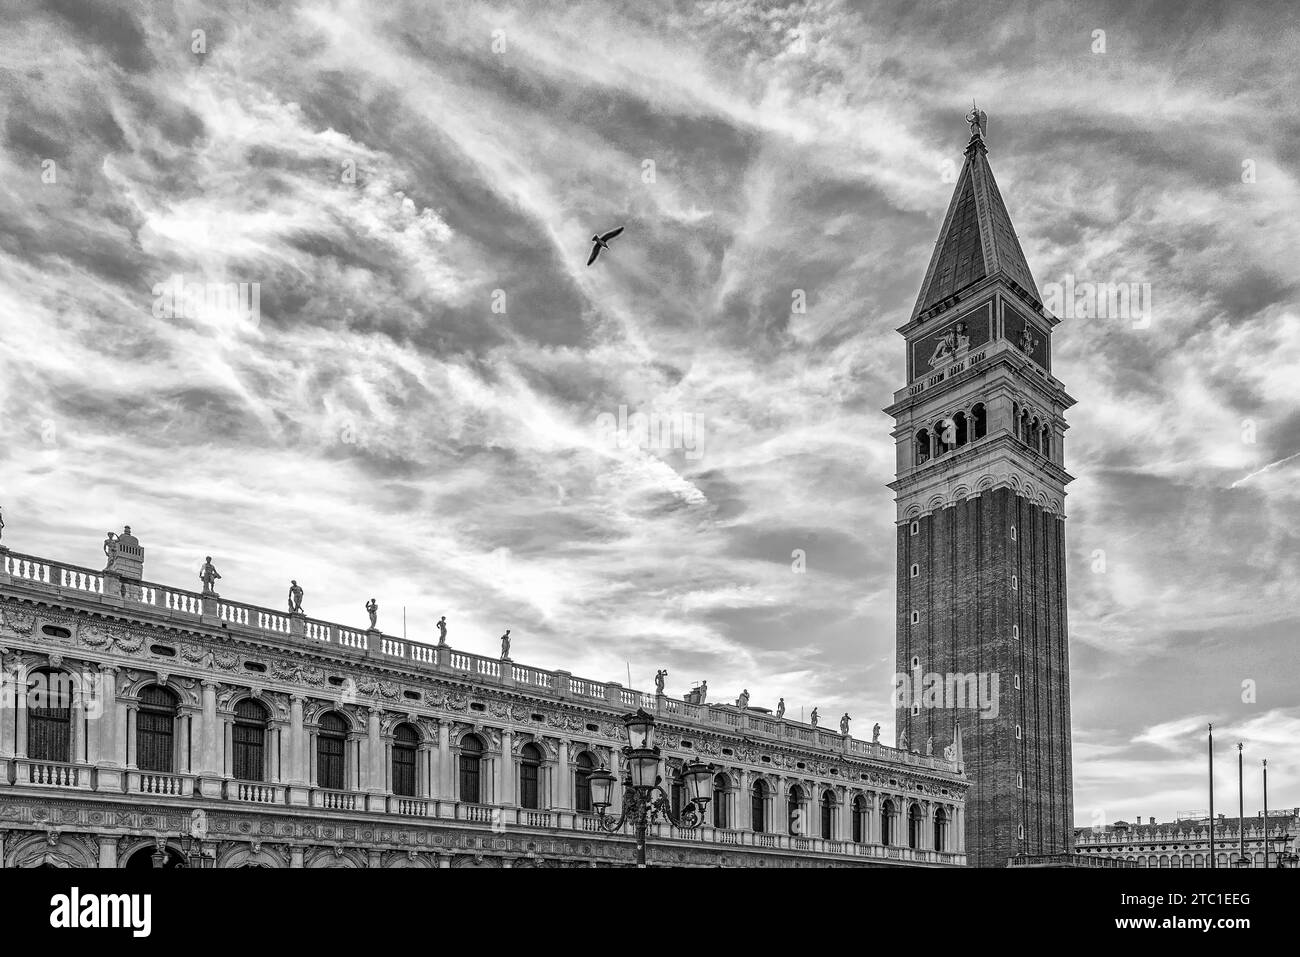 Un oiseau survole la Piazza San Marco, le centre historique de Venise, en Italie, contre un ciel magnifique, en noir et blanc Banque D'Images